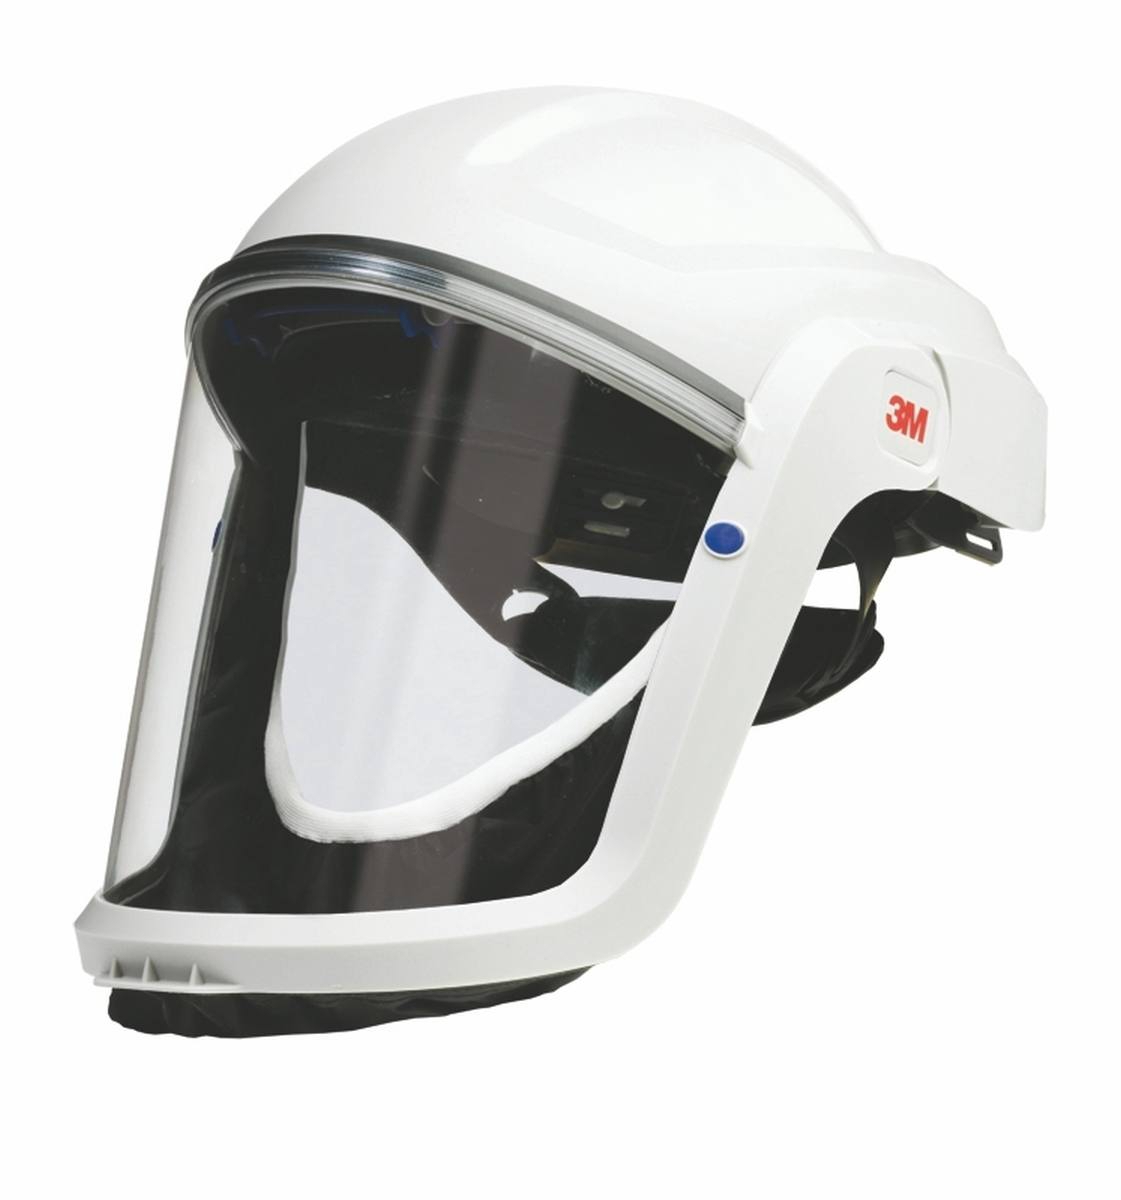 Casque de protection 3M Speedglas Versaflo M206 Joint facial confort avec protection respiratoire à ventilation assistée Adflo avec tuyau d'air QRS, adaptateur, débitmètre d'air, préfiltre, pare-étincelles, filtre à particules, batterie lithium-ion e